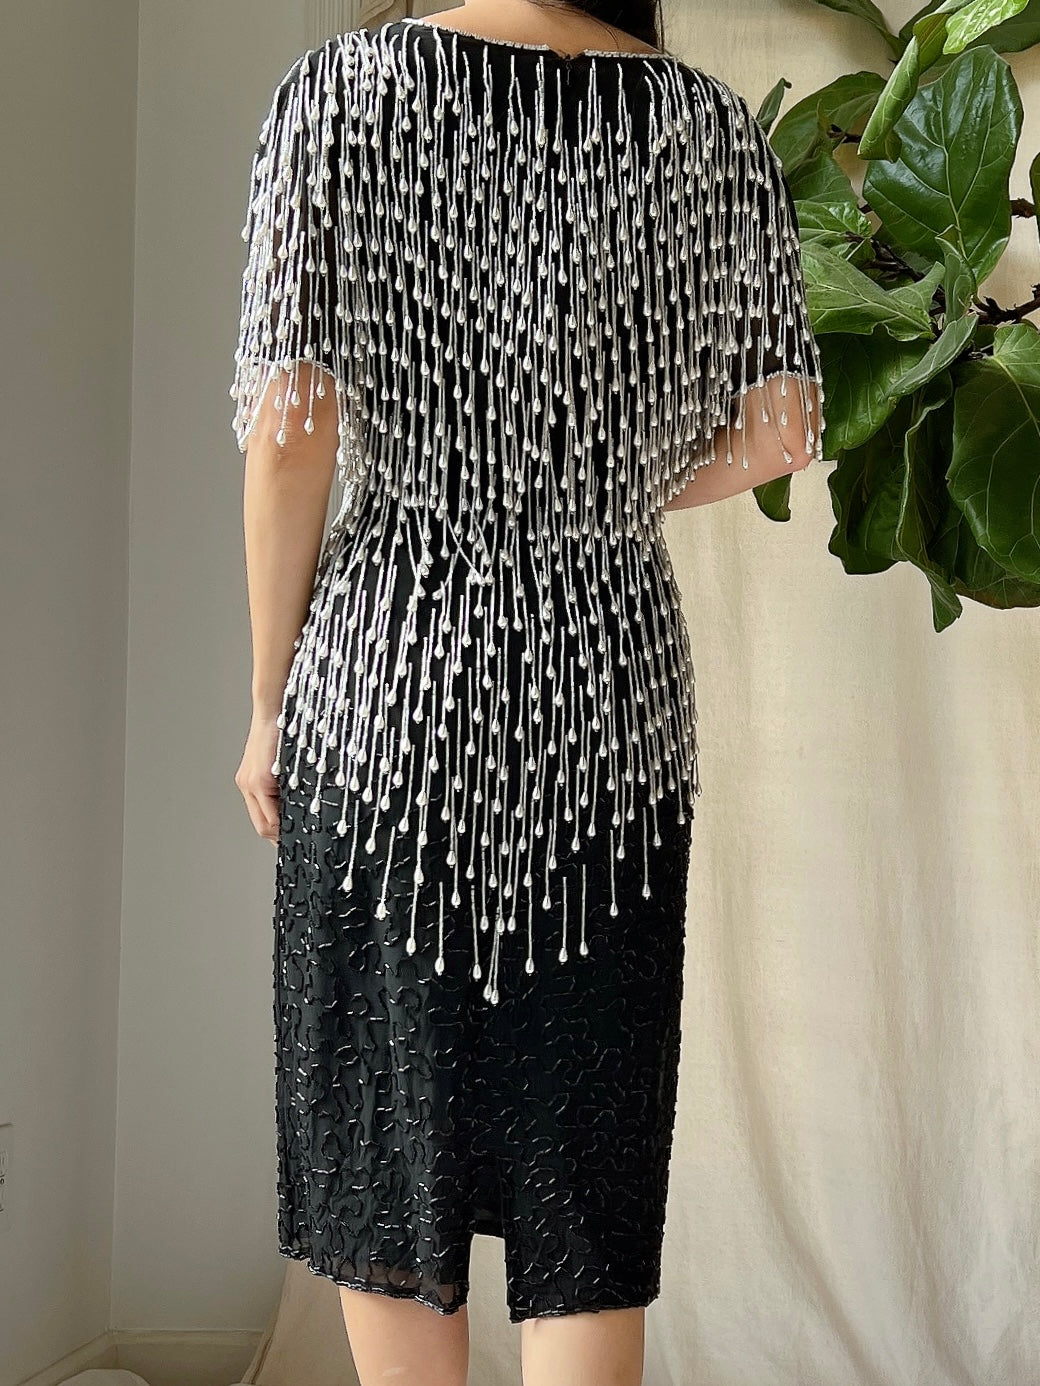 Vintage Pearl Fringe Dress - S/M